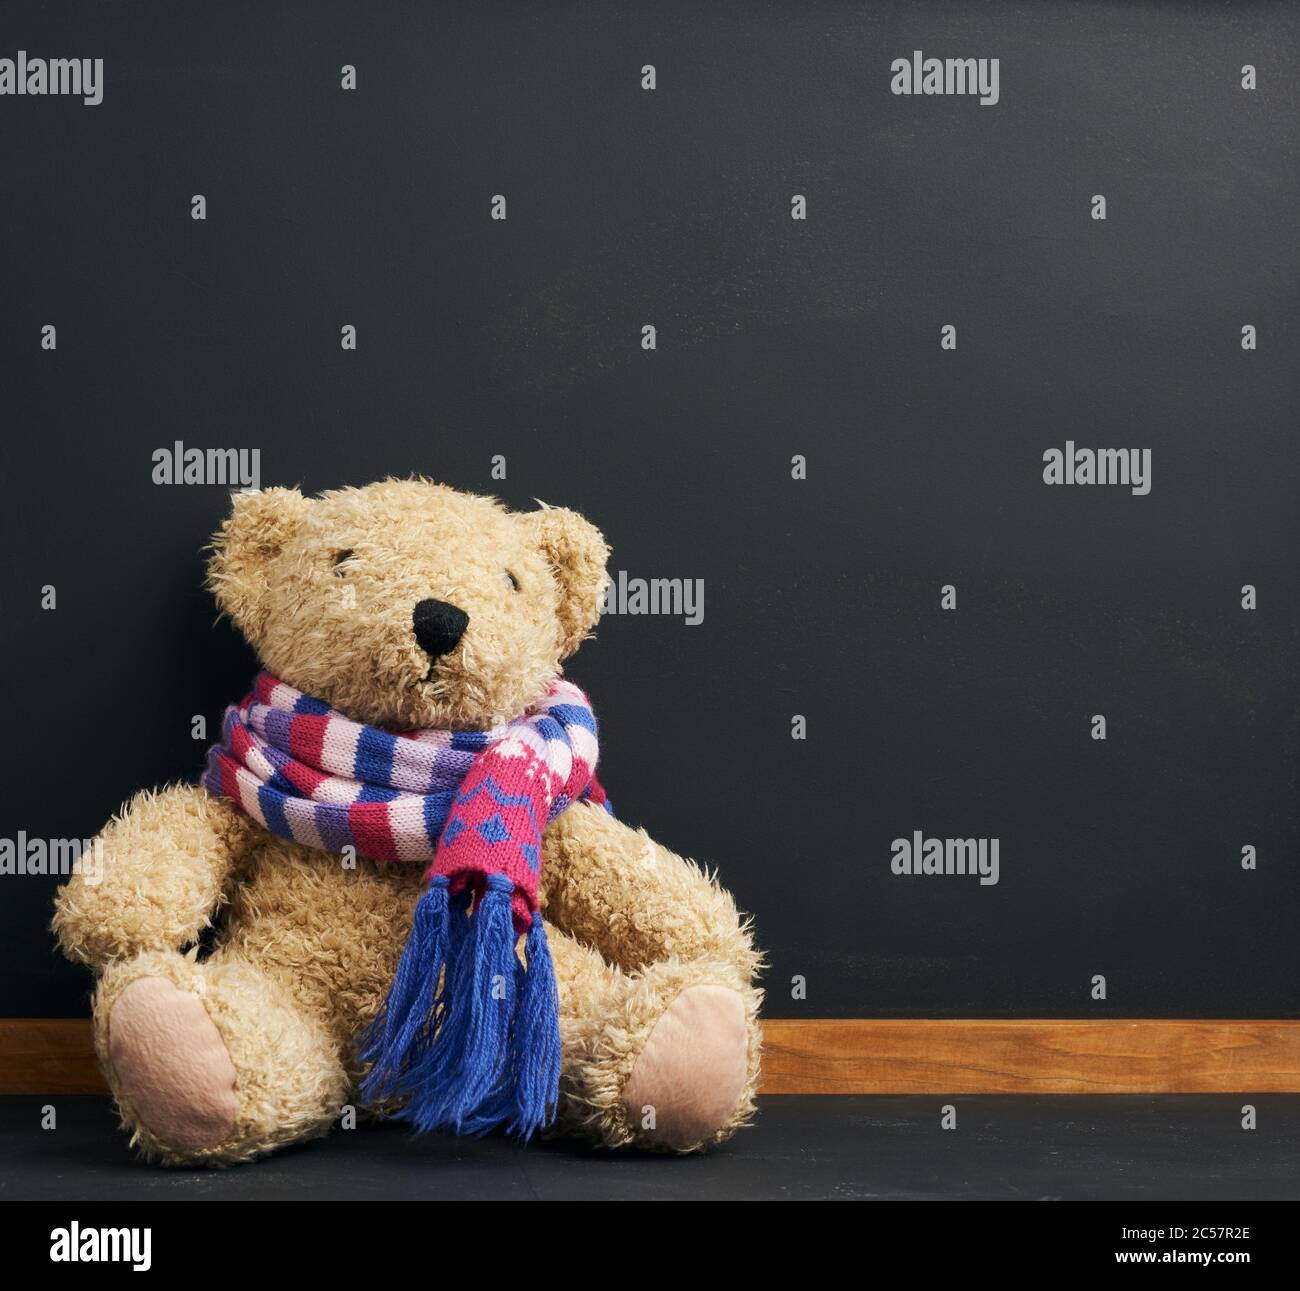 ours en peluche marron dans un foulard tricoté assis sur un fond de tableau noir de craie, concept de retour à l'école, espace de copie Banque D'Images